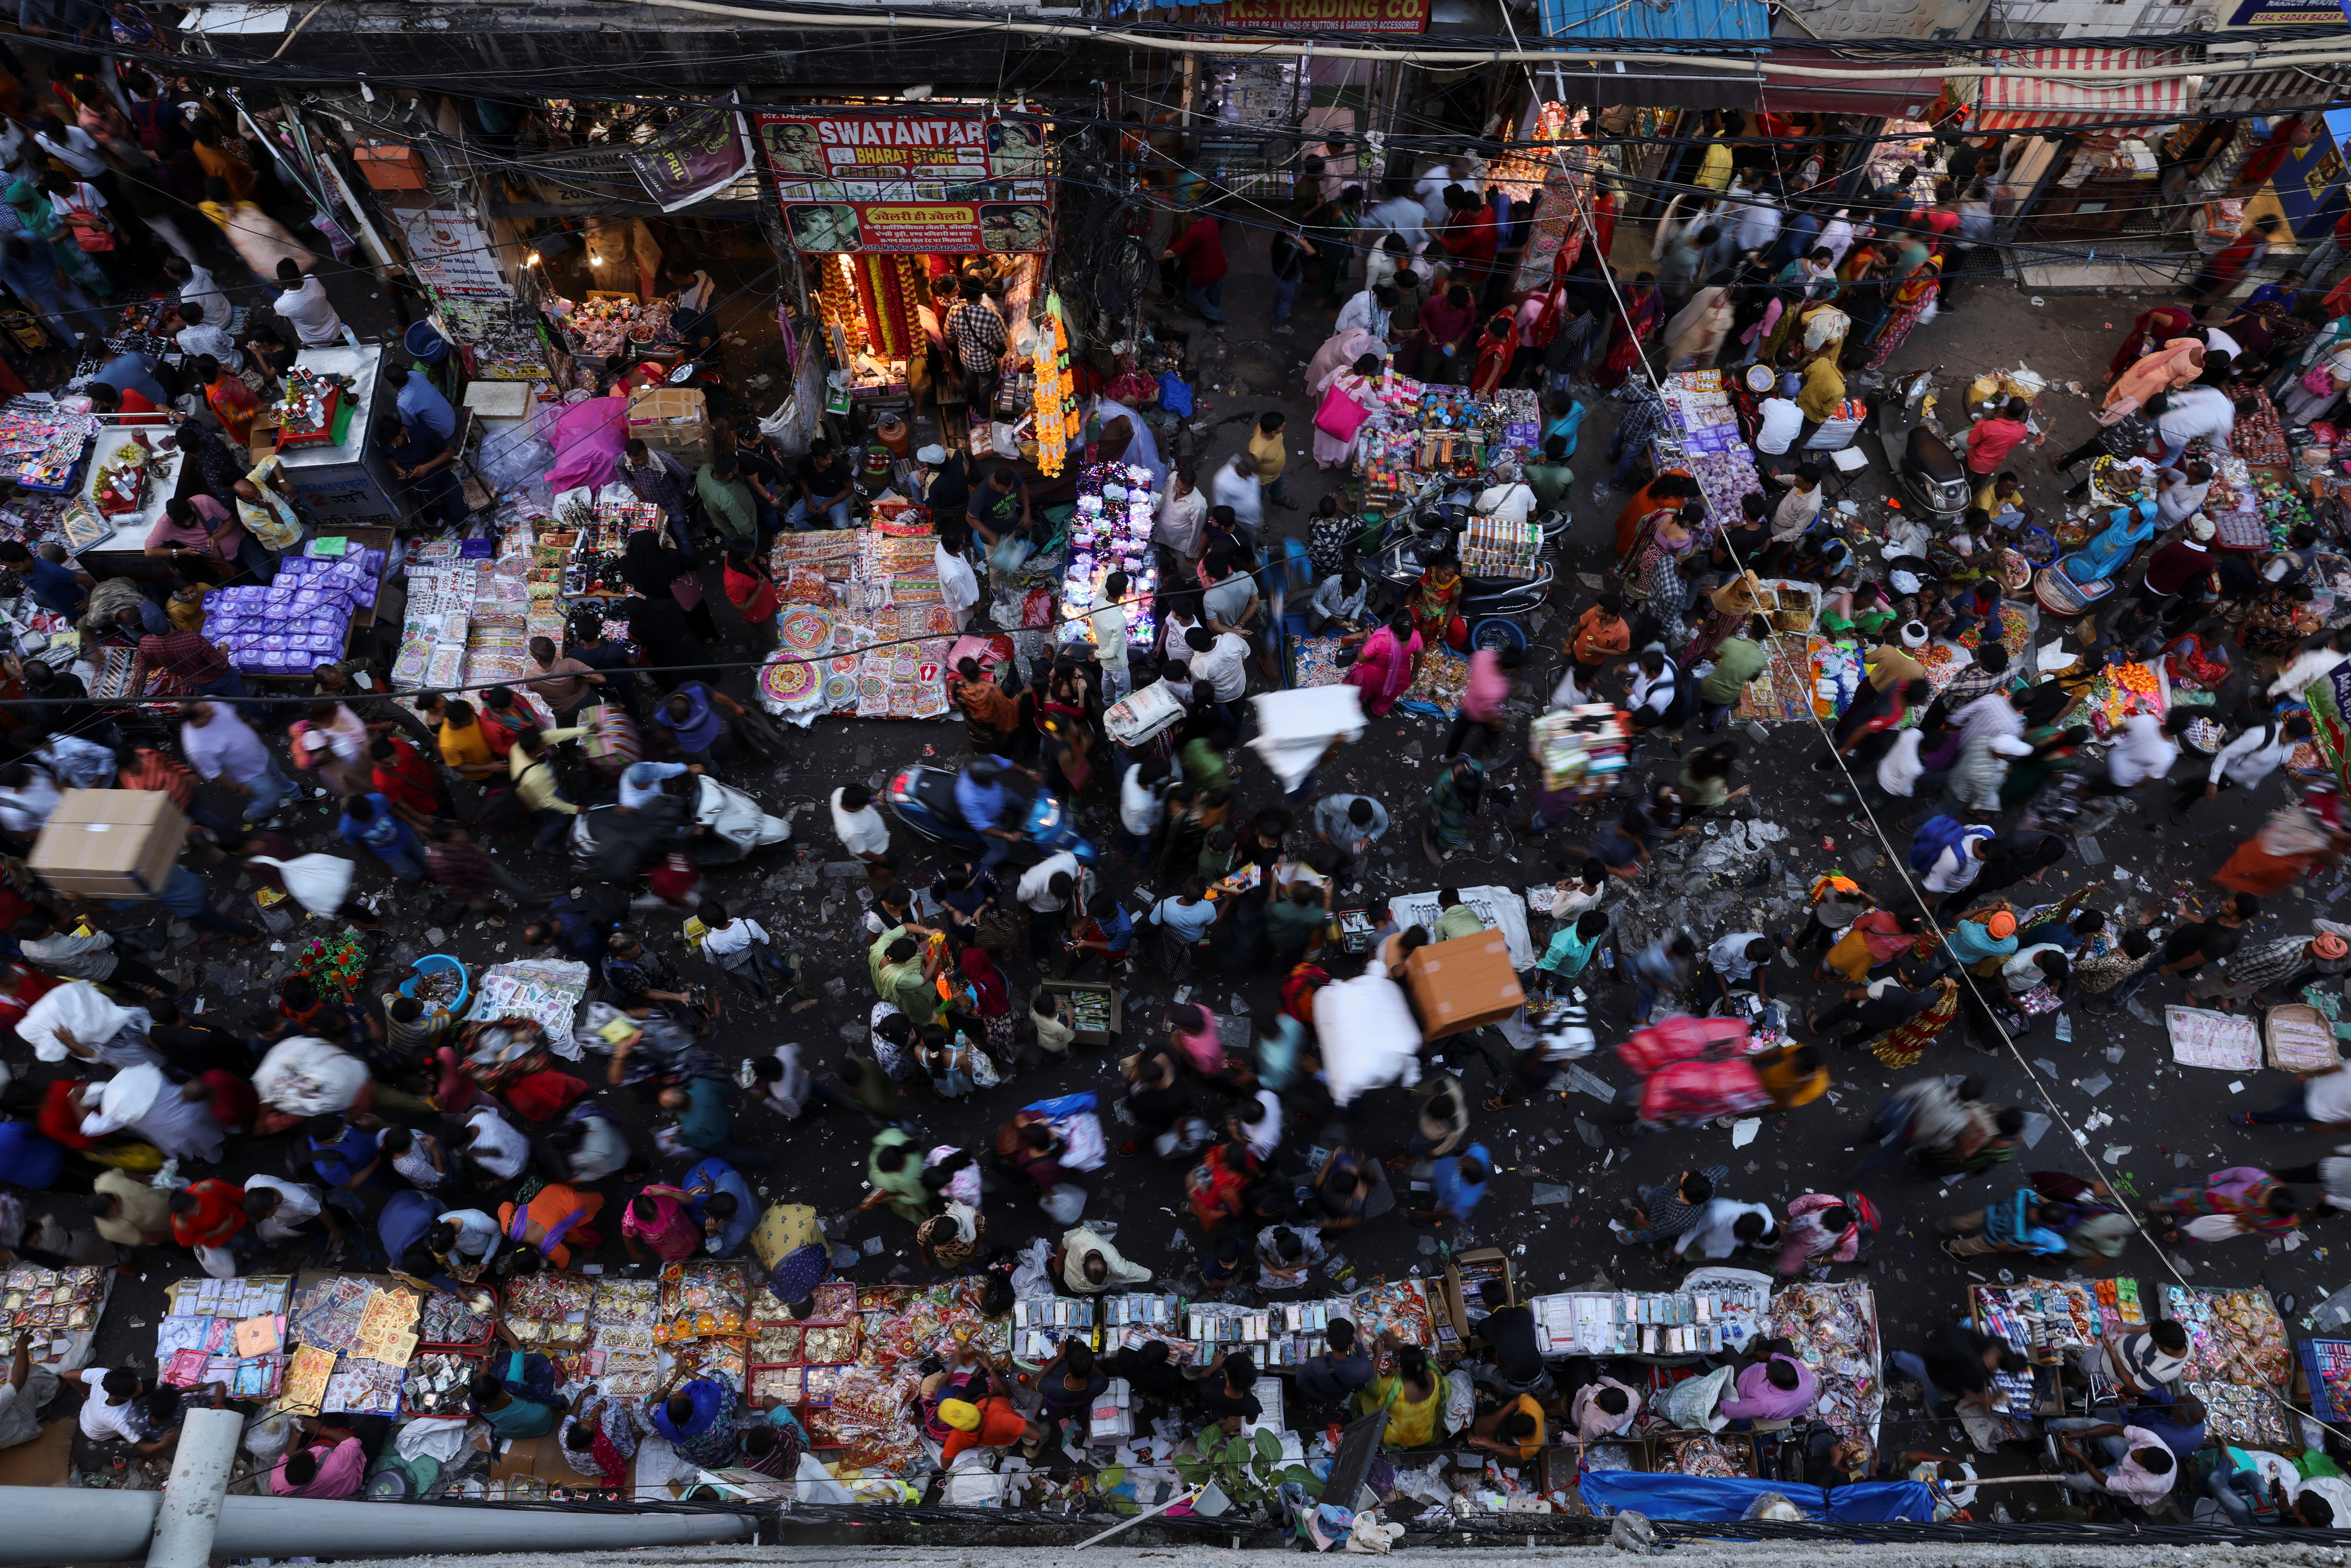 La gente fa acquisti in un mercato affollato nel centro storico di Delhi prima di Diwali, la festa indù delle luci.